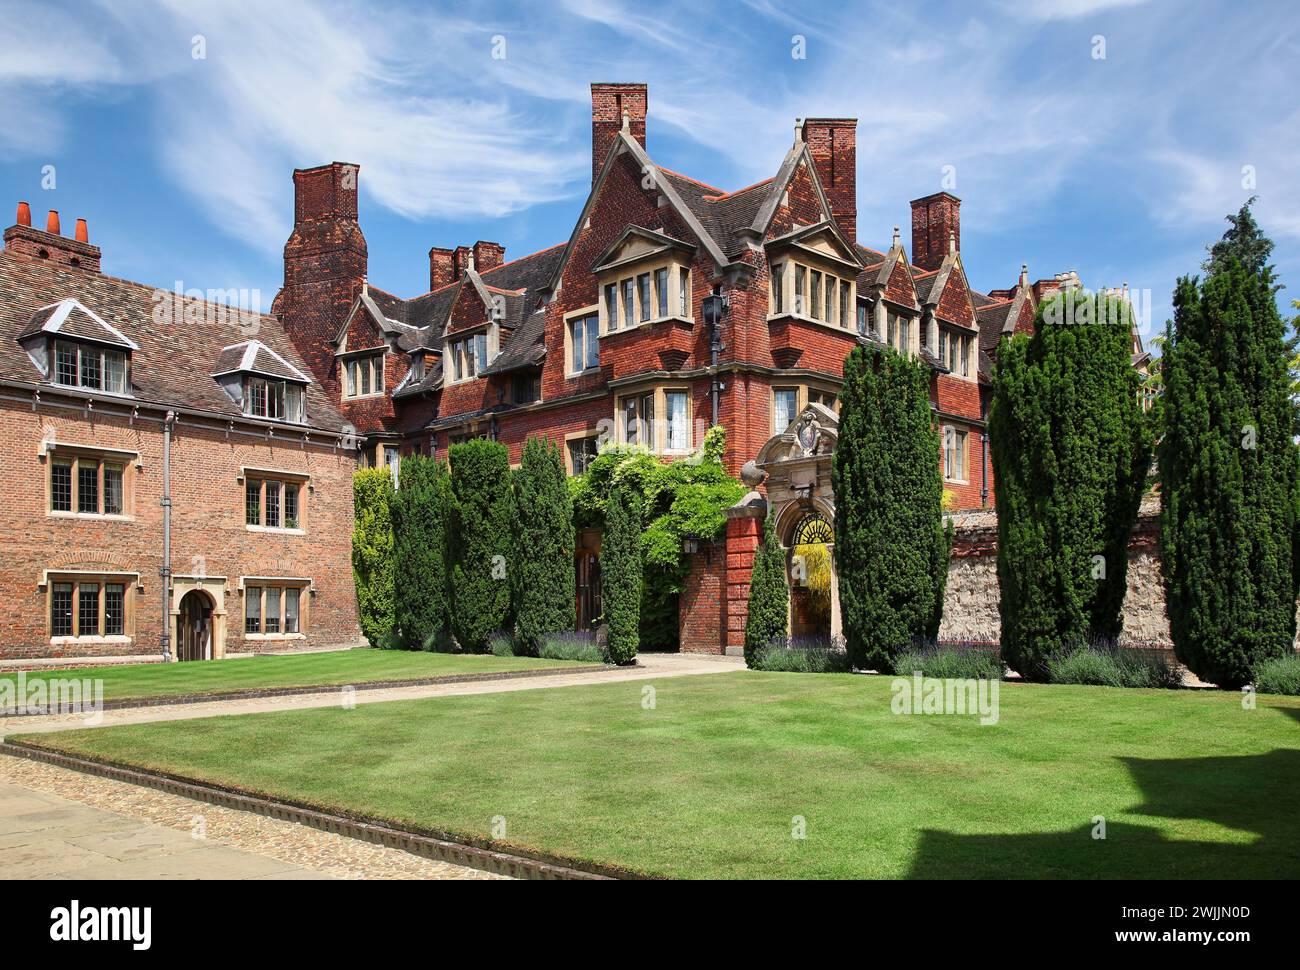 La vue de l'ancien bâtiment en briques rouges et la porte à la chaîne est de Ivy court du collège Pembroke. Université de Cambridge. Royaume-Uni Banque D'Images